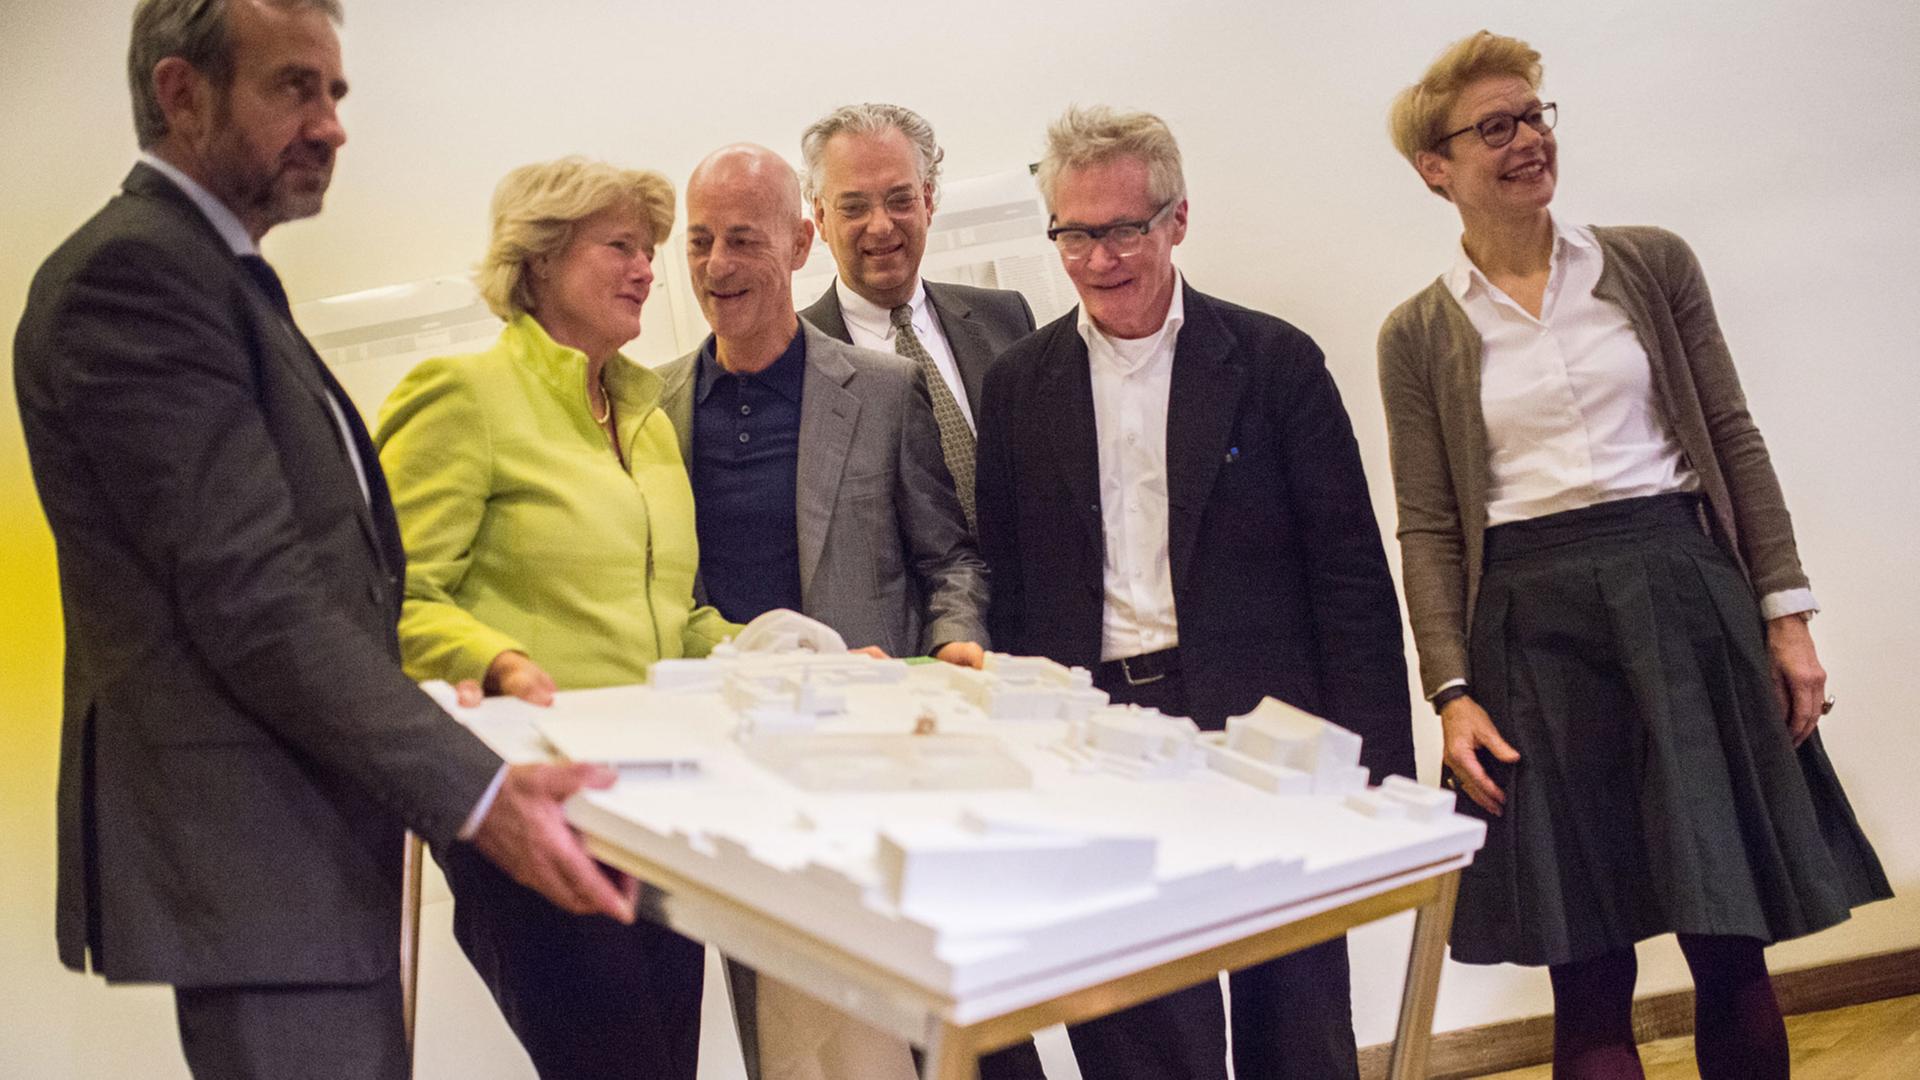  Das Museum der Moderne in Berlin wird vom Schweizer Architekturbüro Herzog & de Meuron gebaut